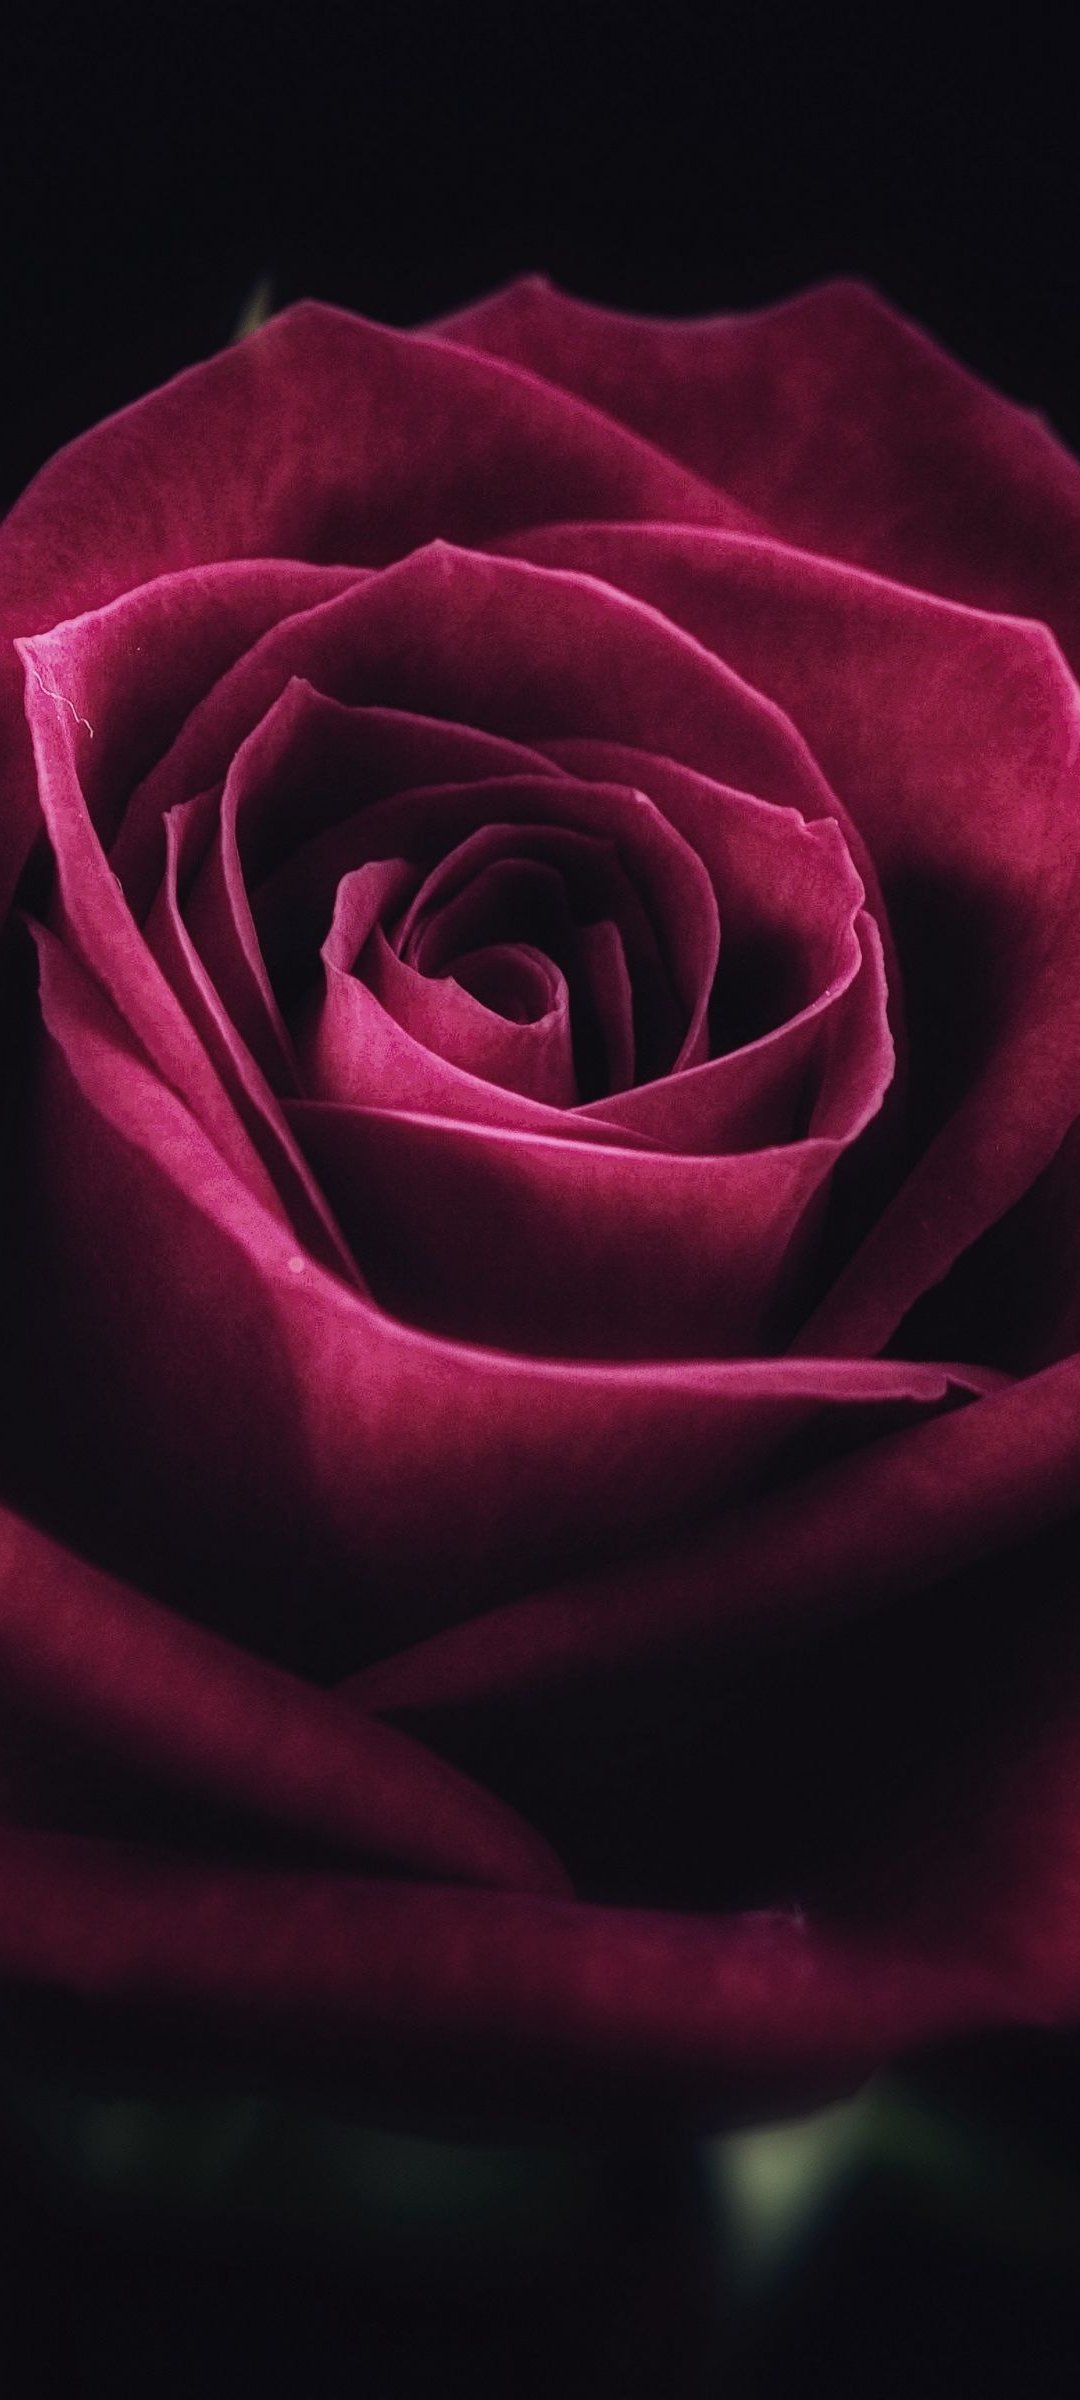 Hãy để bức hình nền hoa hồng đỏ đen đáng yêu bao trọn màn hình điện thoại của bạn. Những bông hoa hồng tươi sáng và gợi cảm này sẽ giúp bạn thư giãn sau một ngày làm việc mệt mỏi.